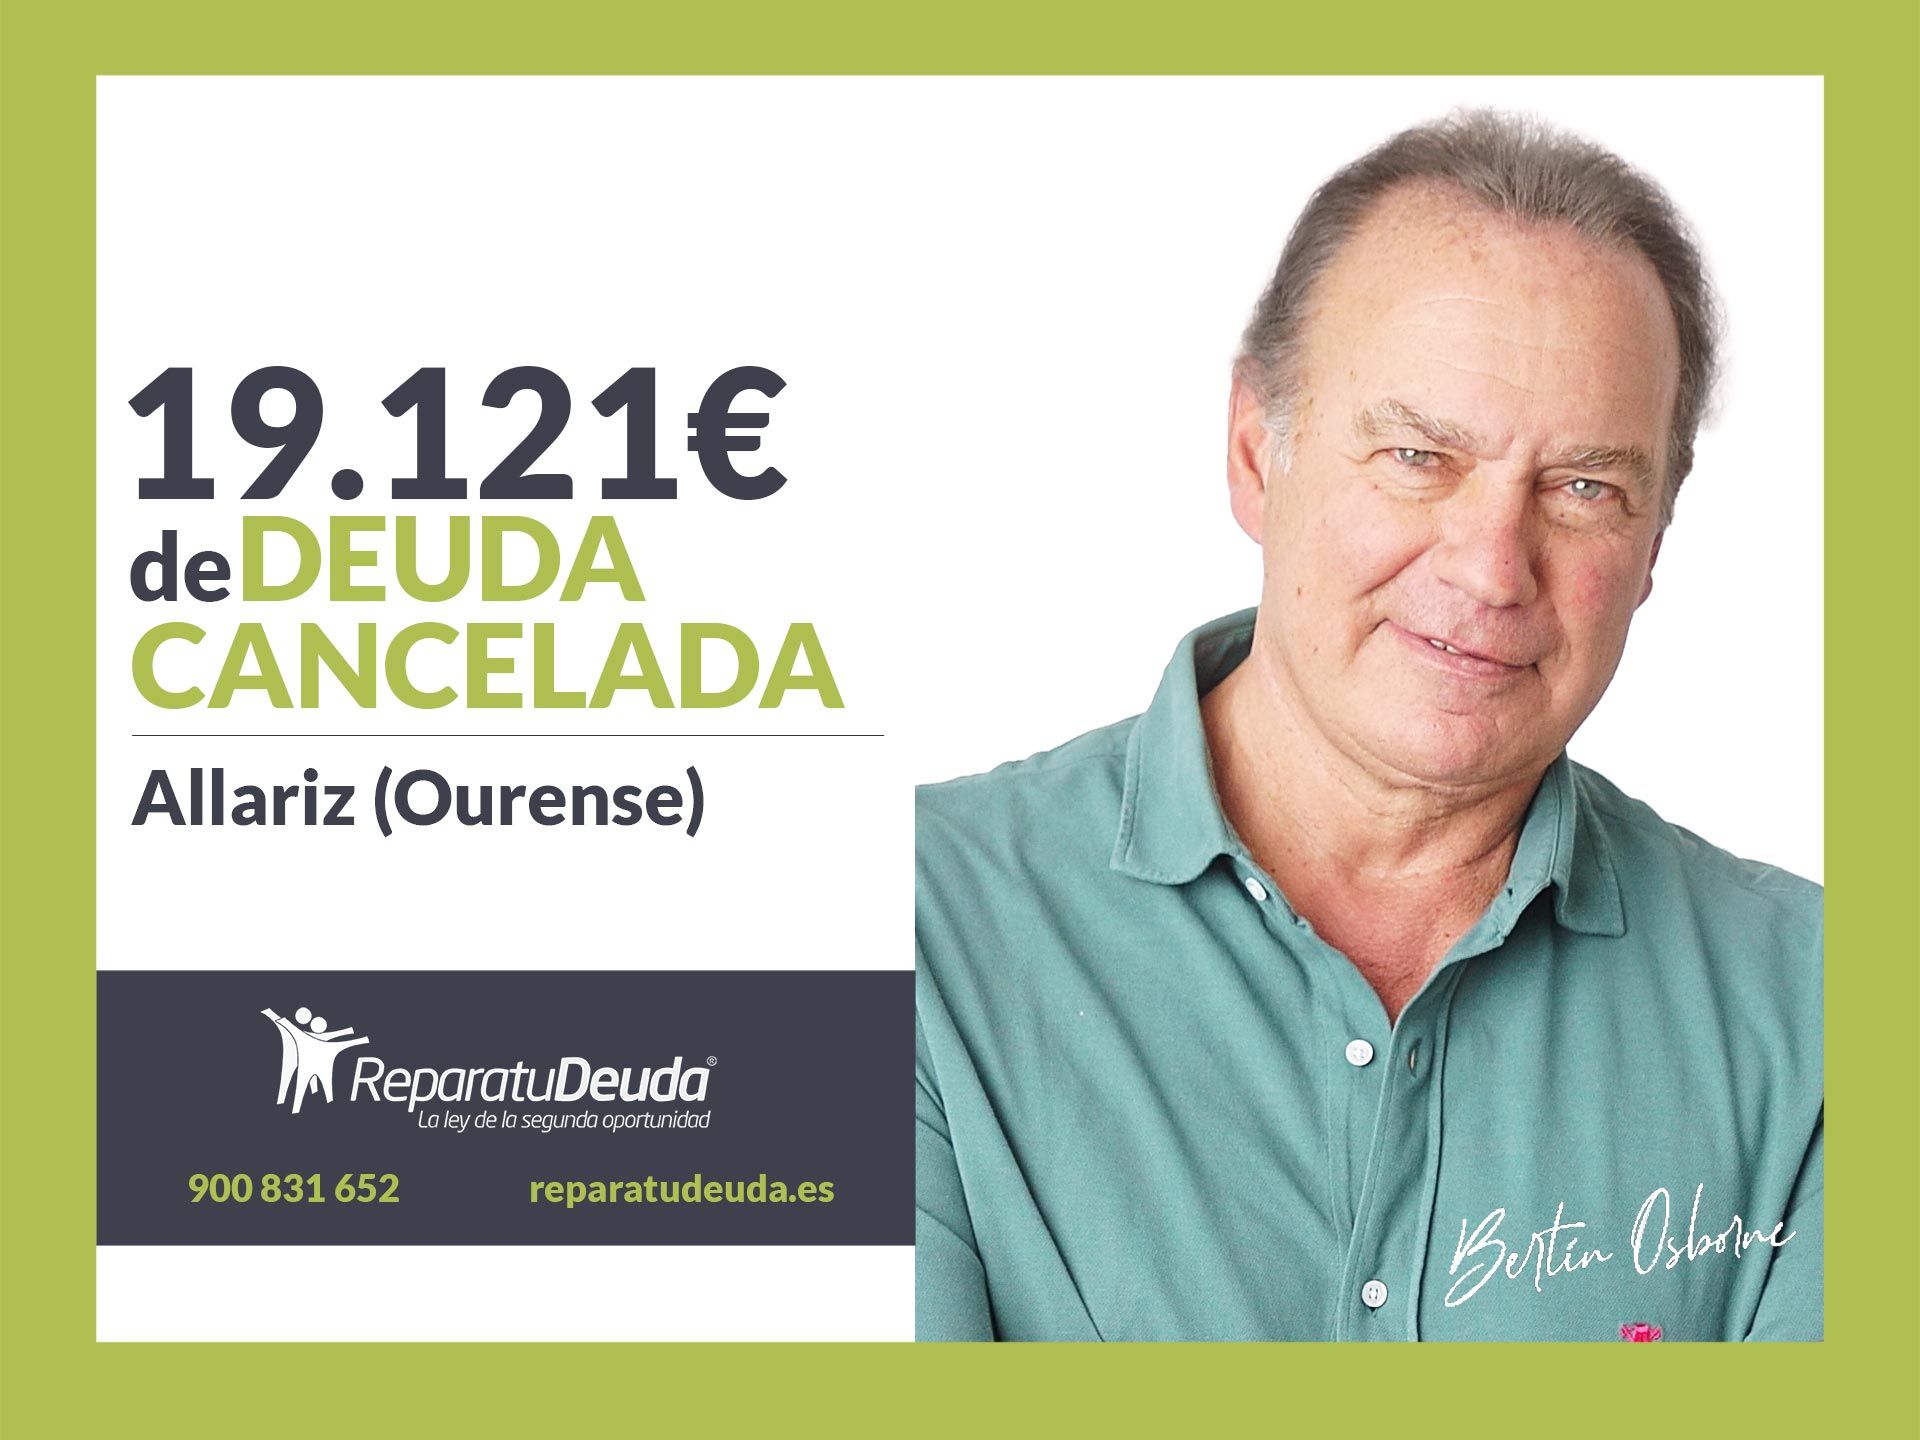 Repara tu Deuda Abogados cancela 19.121? en Allariz (Ourense) gracias a la Ley de Segunda Oportunidad